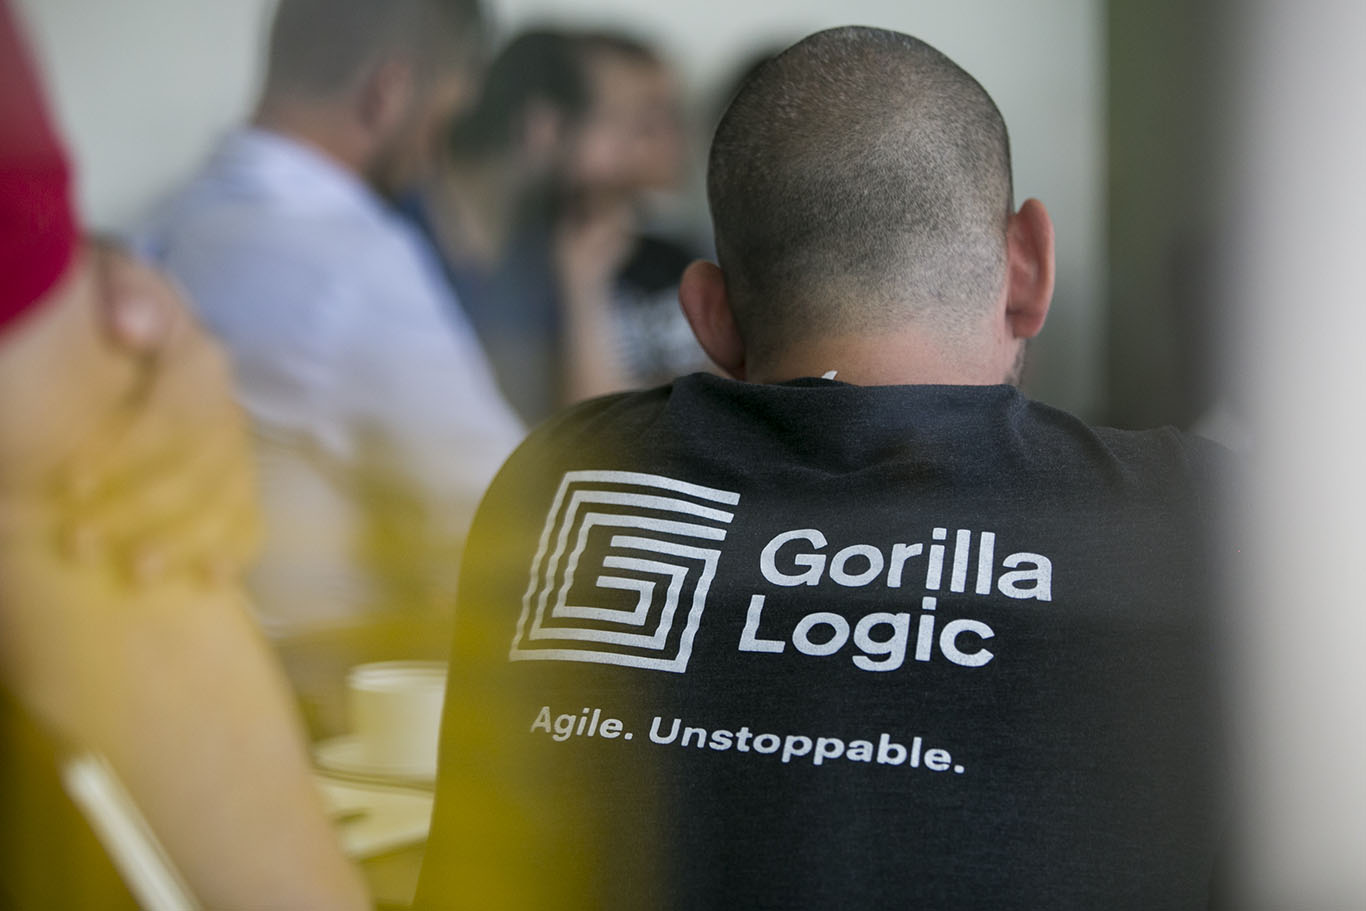 Gorilla Logic abrió más de 100 vacantes en Colombia